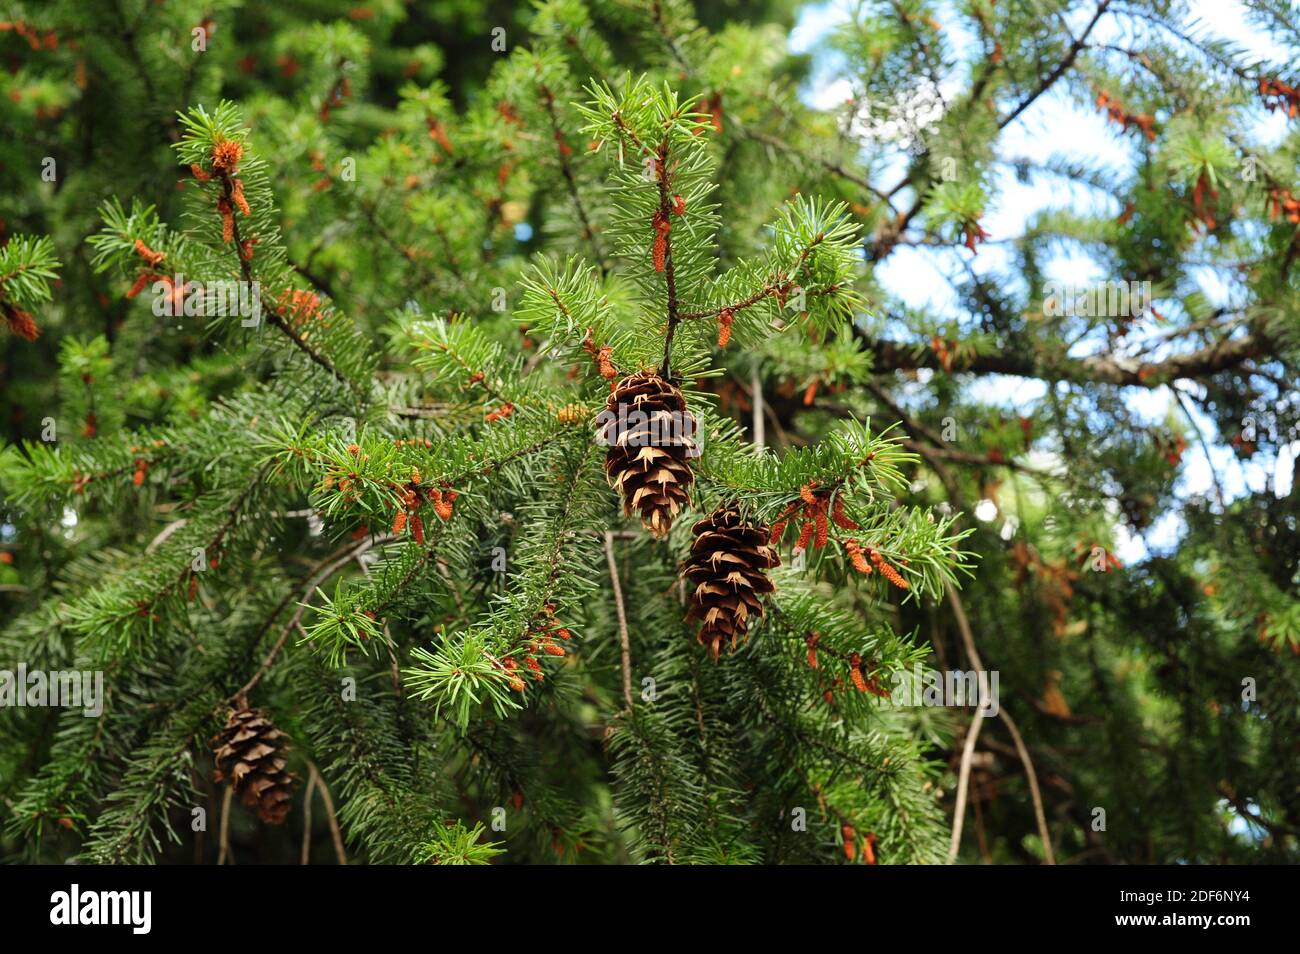 El abeto Douglas o pino Oregon (Pseudotsuga menziesii) es un árbol de coníferas nativo del oeste de Norteamérica. Detalle de conos, flores masculinas y hojas. Esto Foto de stock